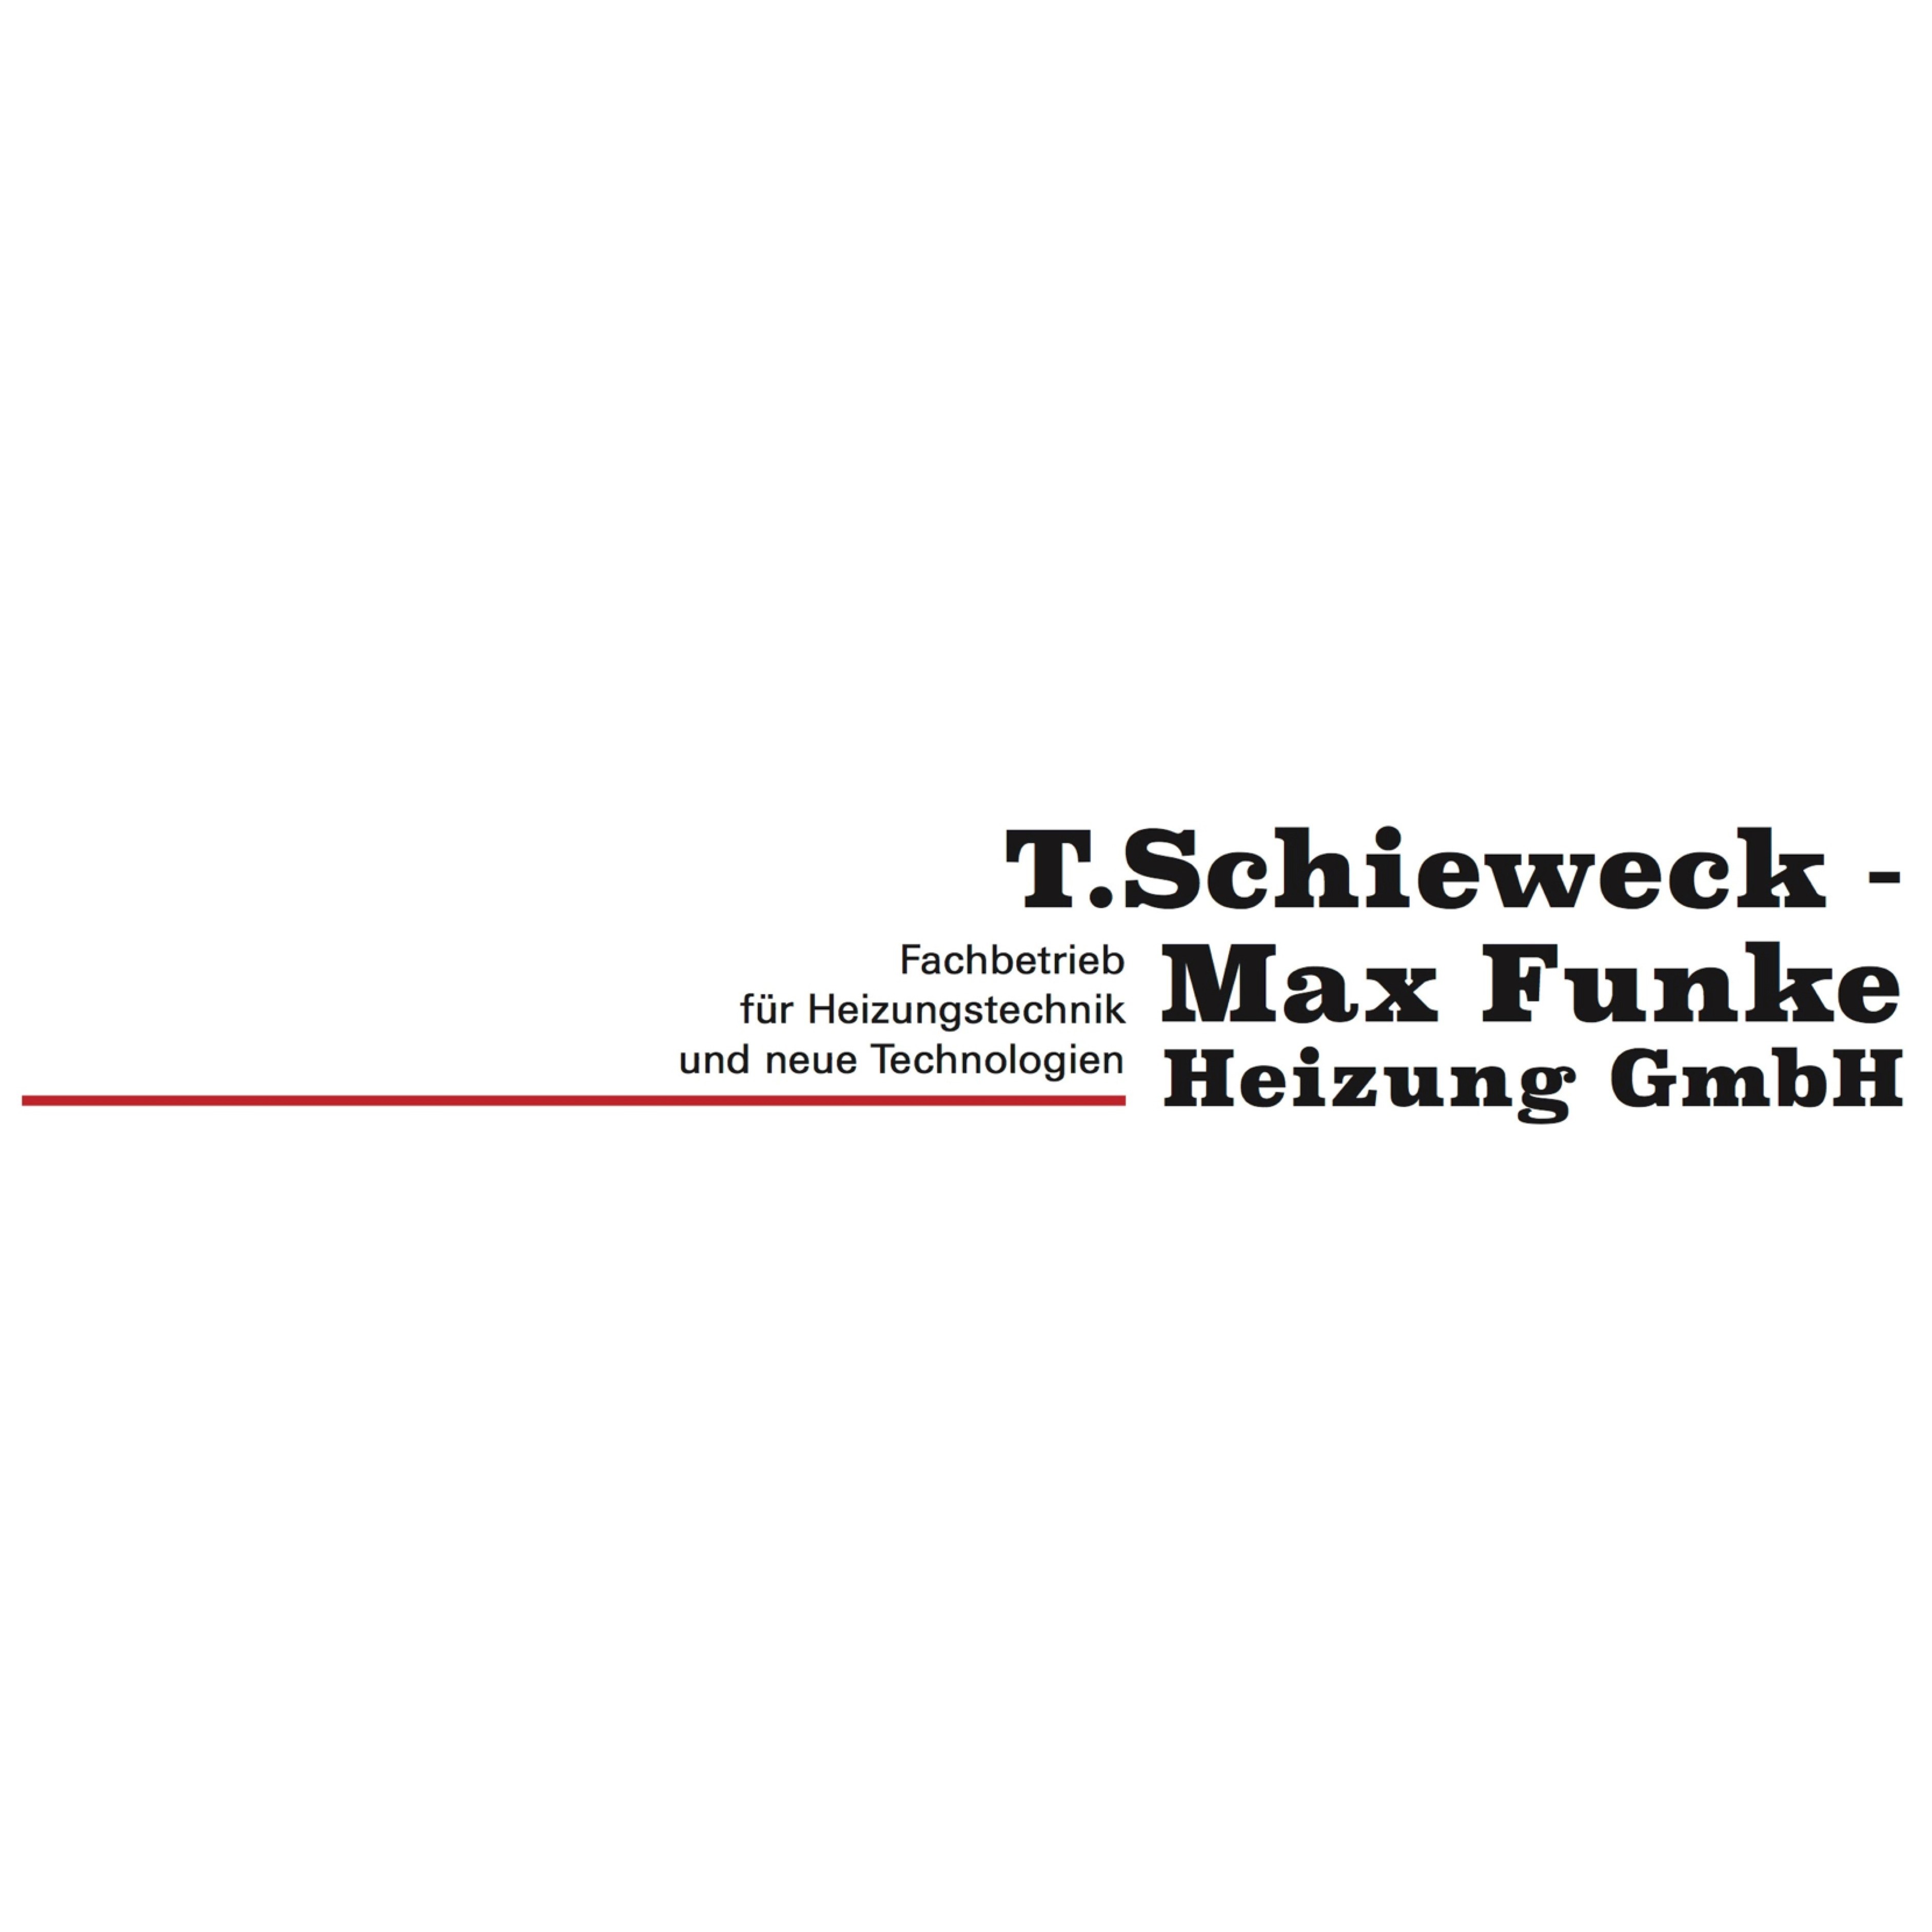 T. Schieweck - Max Funke Heizung GmbH Logo